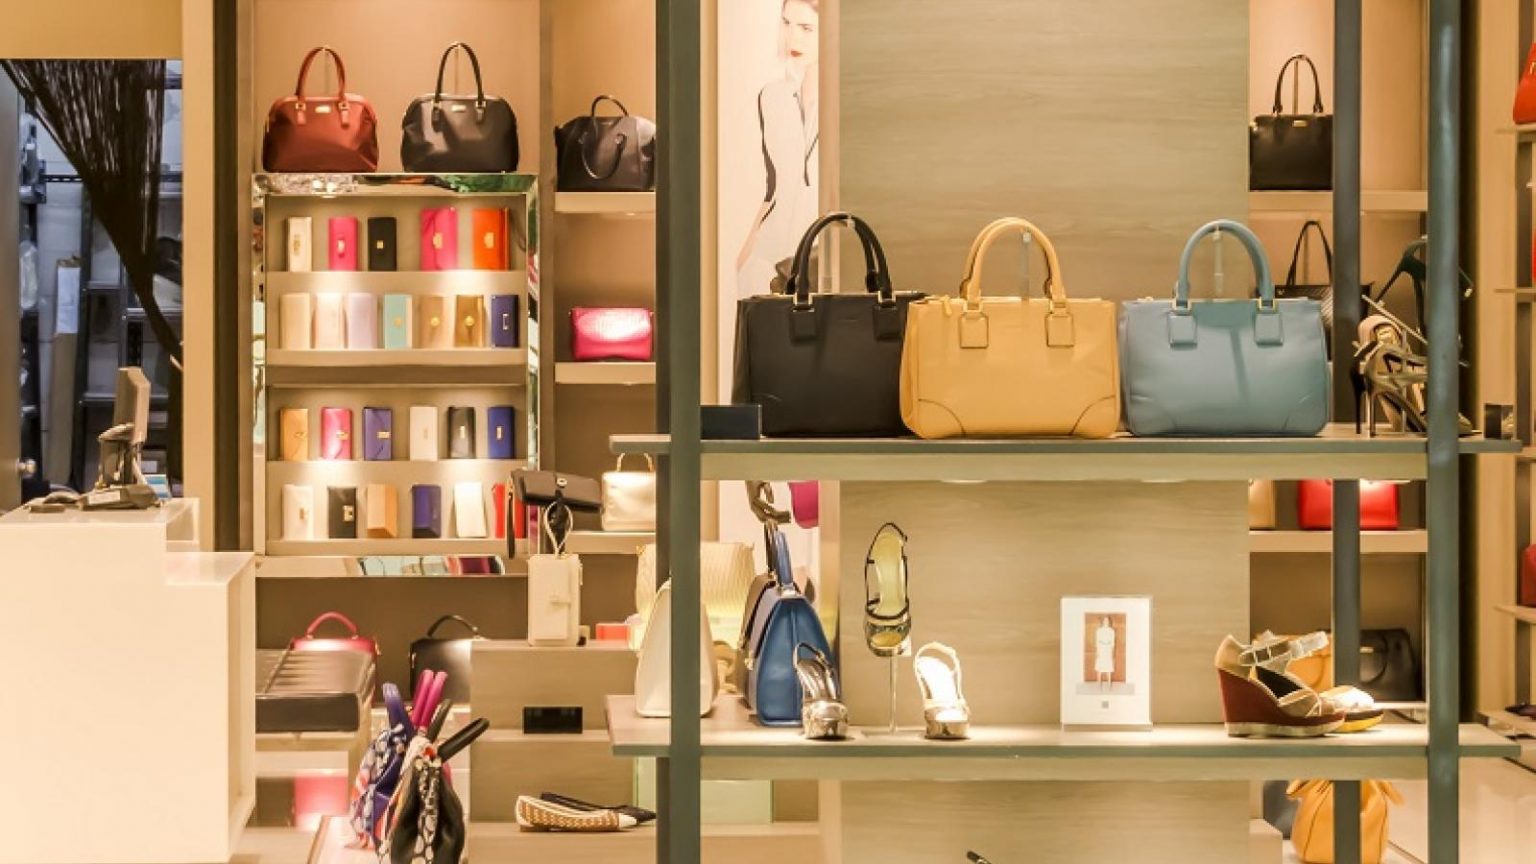 Intérieur d'une boutique de luxe avec étagères éclairées présentant des sacs à main et des accessoires de mode haut de gamme.